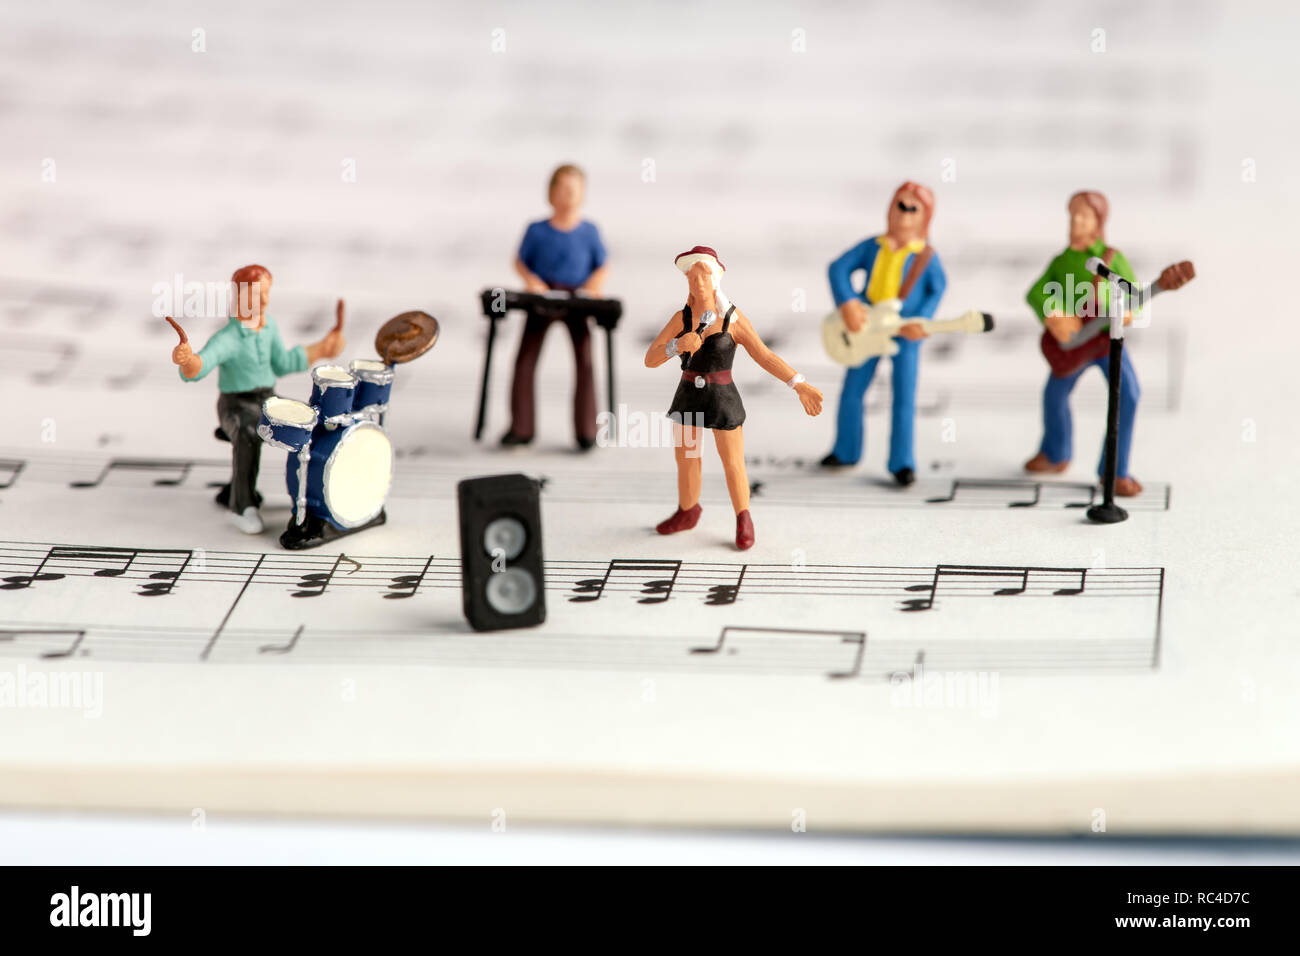 Rock Band sur scène les gens miniature open music livre avec notes, vue en Tilt-shift focus sélectif, de high angle Banque D'Images